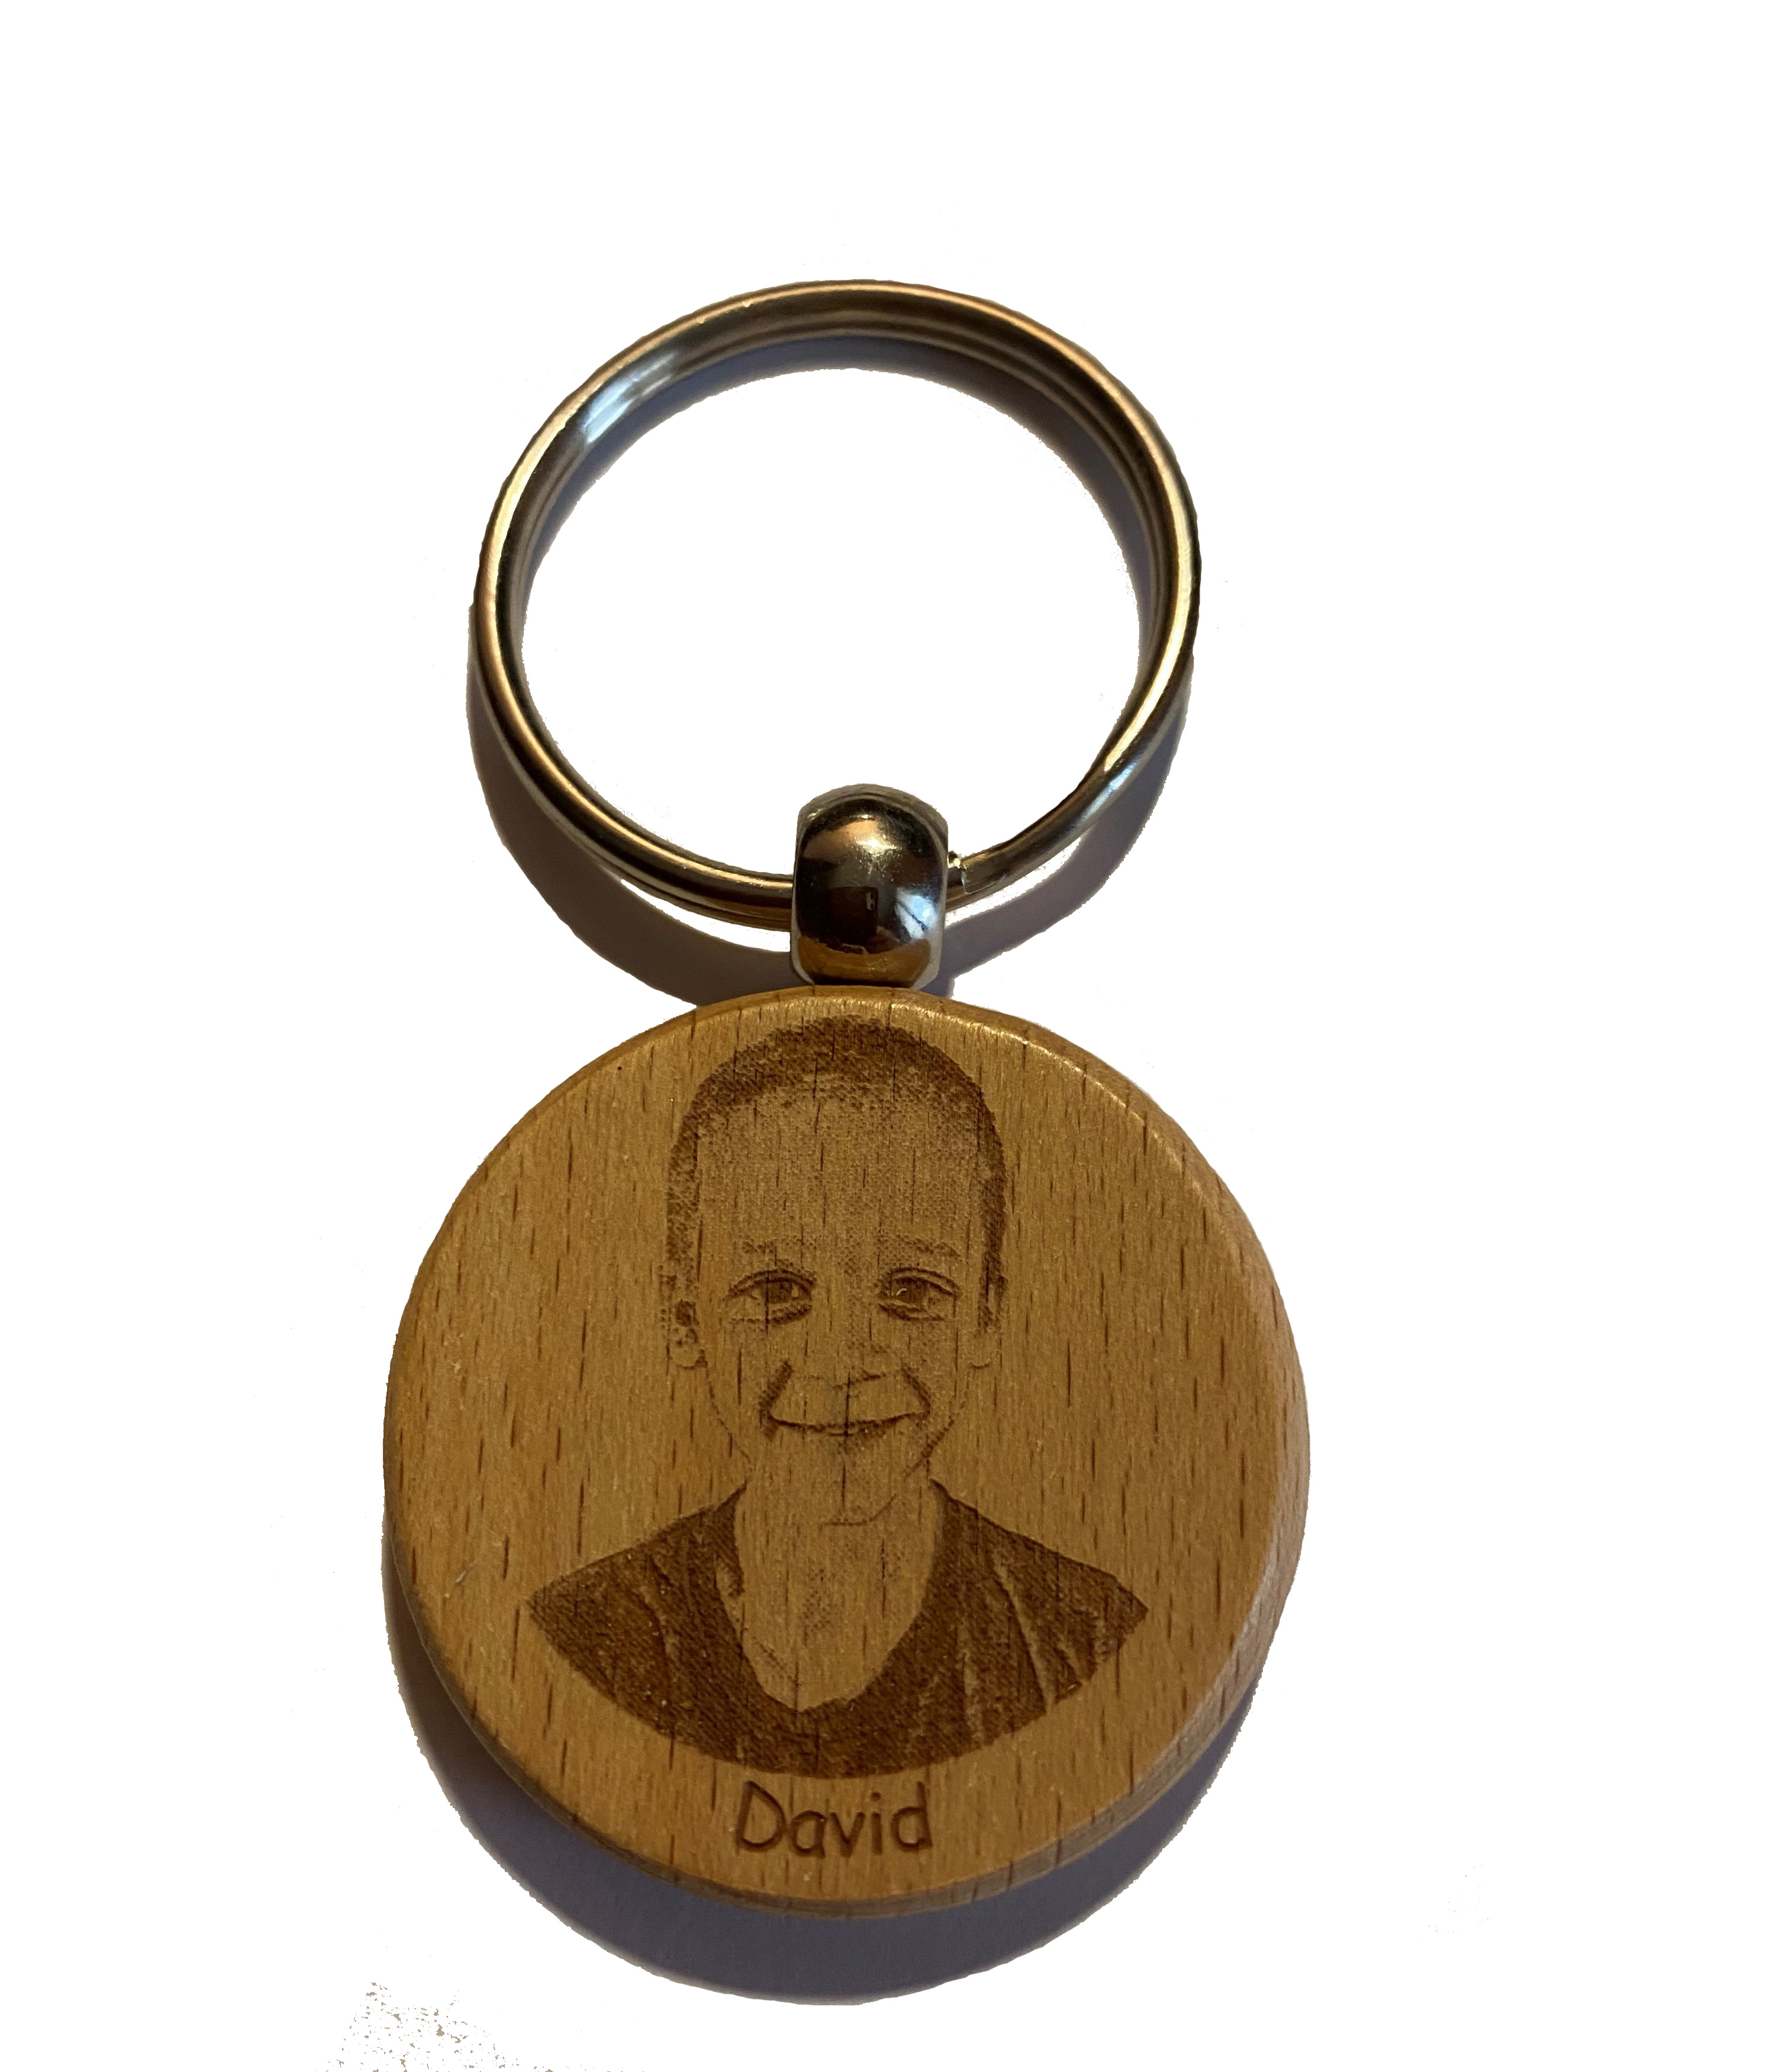 Porte clés avec photo et texte personnalisable gravés dans le bois